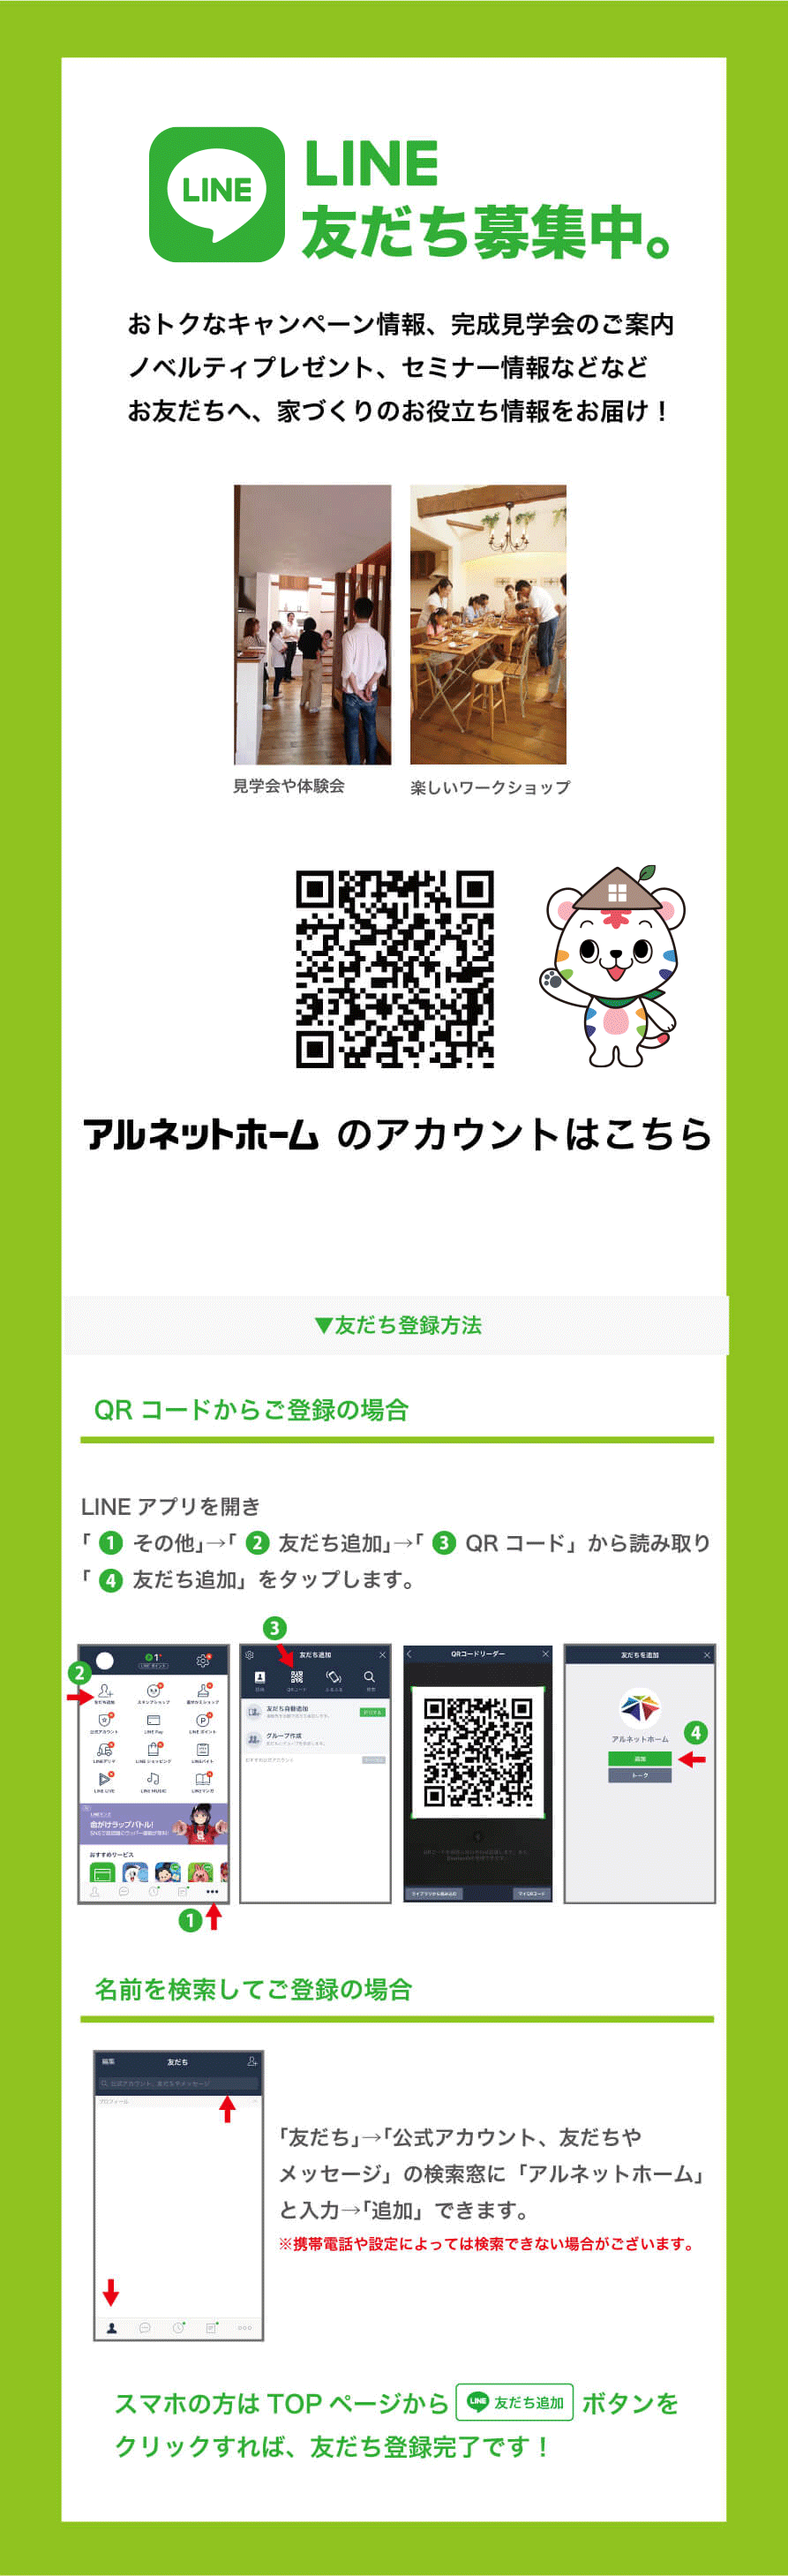 line@友だち登録方法